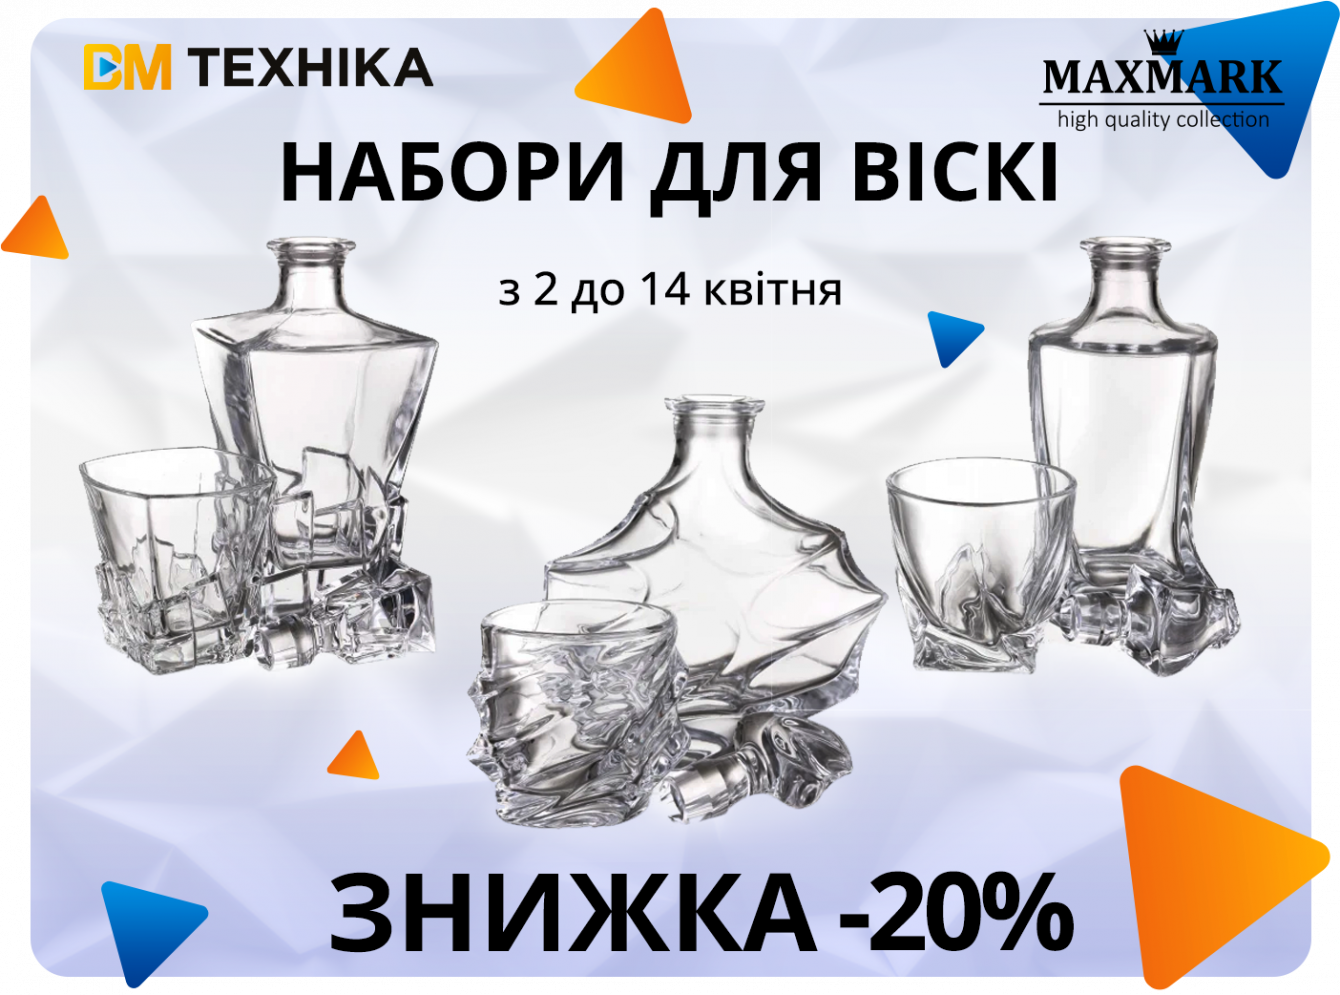 Знижки від MAXMARK: -20% на набори для віскі